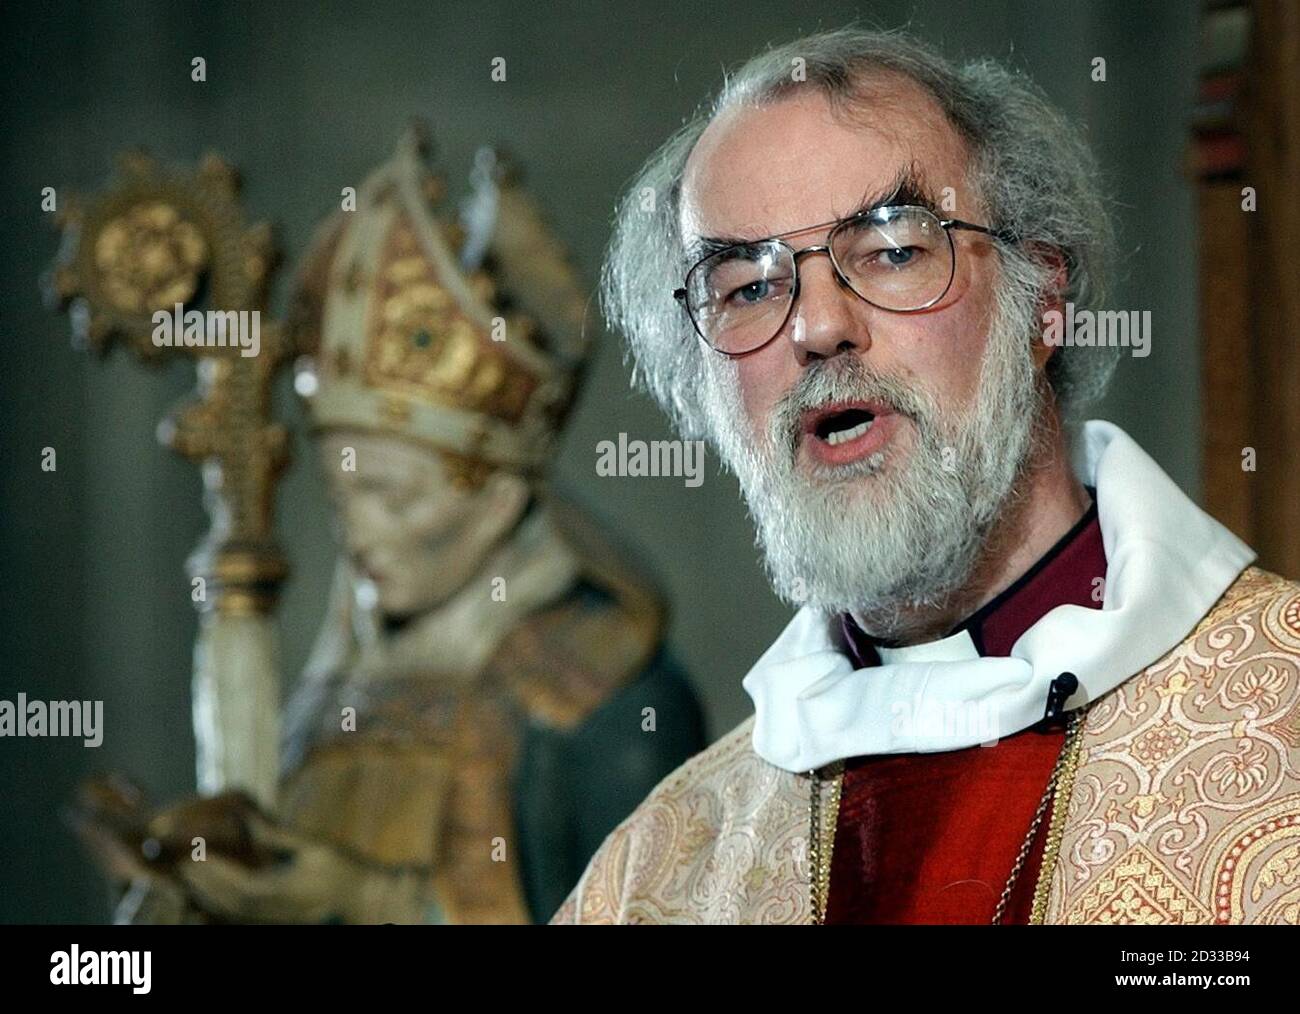 Erzbischof von Canterbury Dr. Rowan Williams hält seine Weihnachtspredigt, während eines Dienstes in Canterbury Catherdral. Wo er Christen, Juden und Muslime drängte, zusammen zu stehen, während er seine jährliche Weihnachtspredigt hielt. Stockfoto